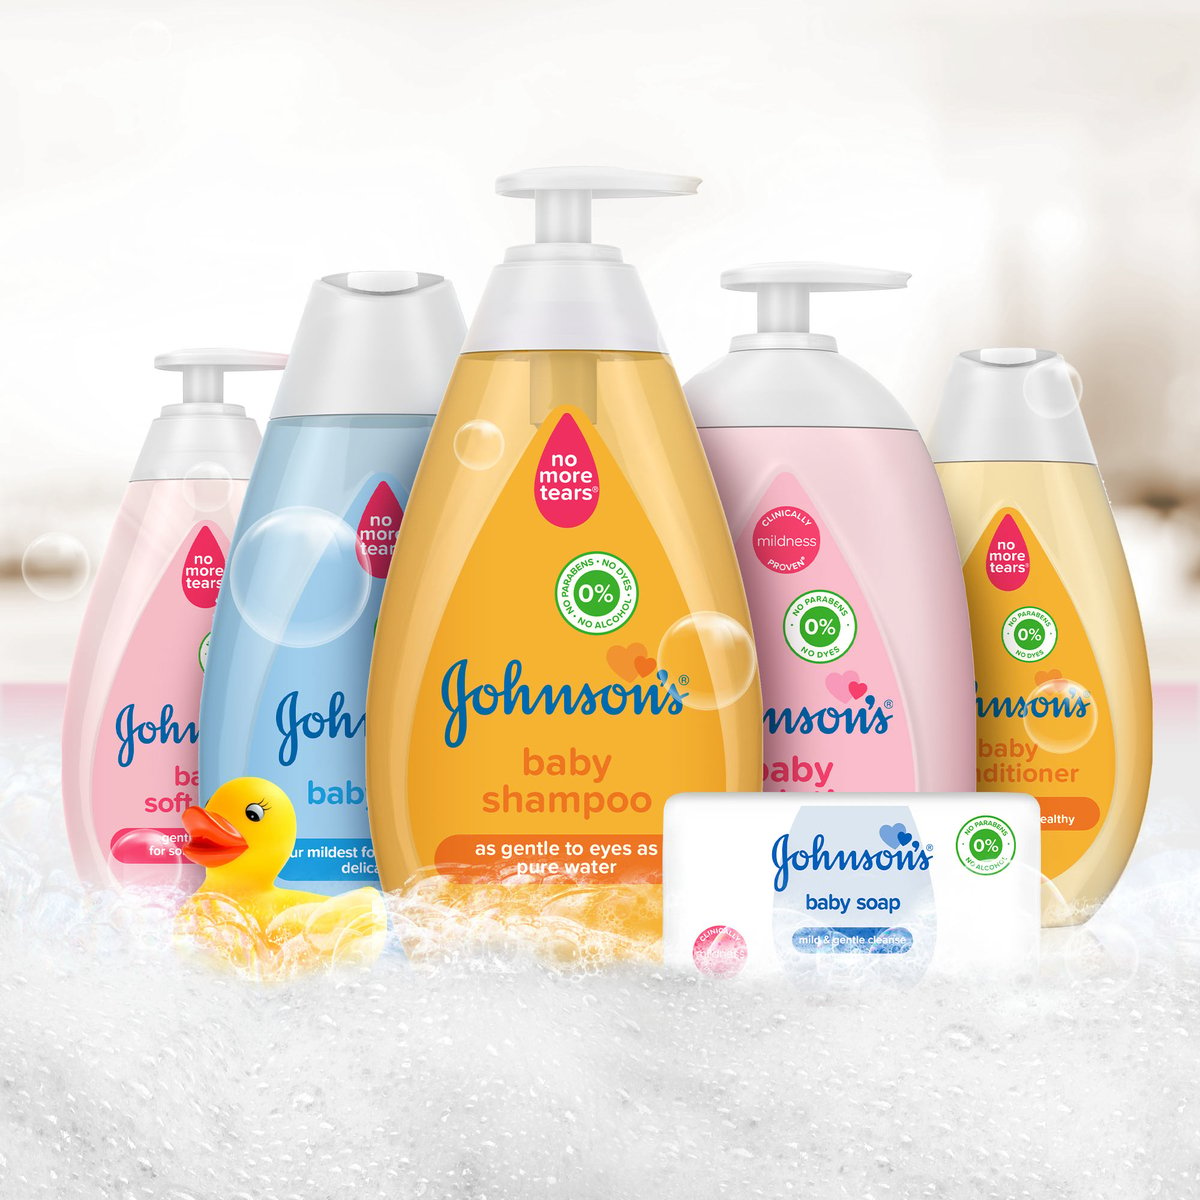 Johnson's - Baby Shampoo